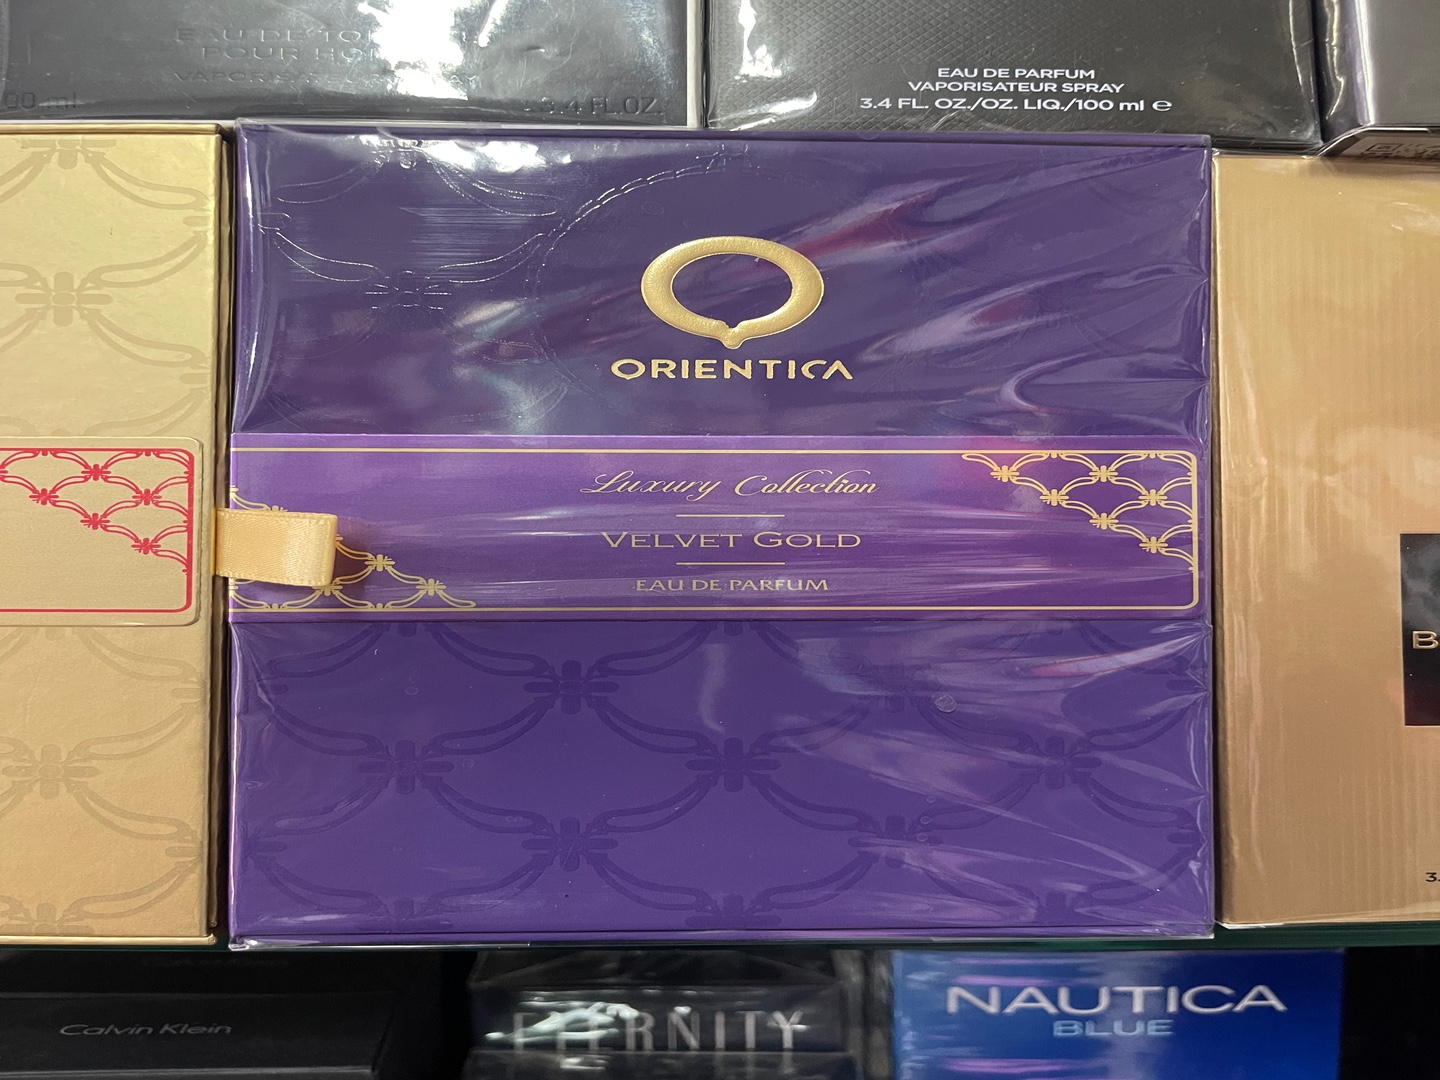 salud y belleza - Perfume Orientica “Velvet Gold” EDP - AL POR MAYOR Y AL DETALLE 0